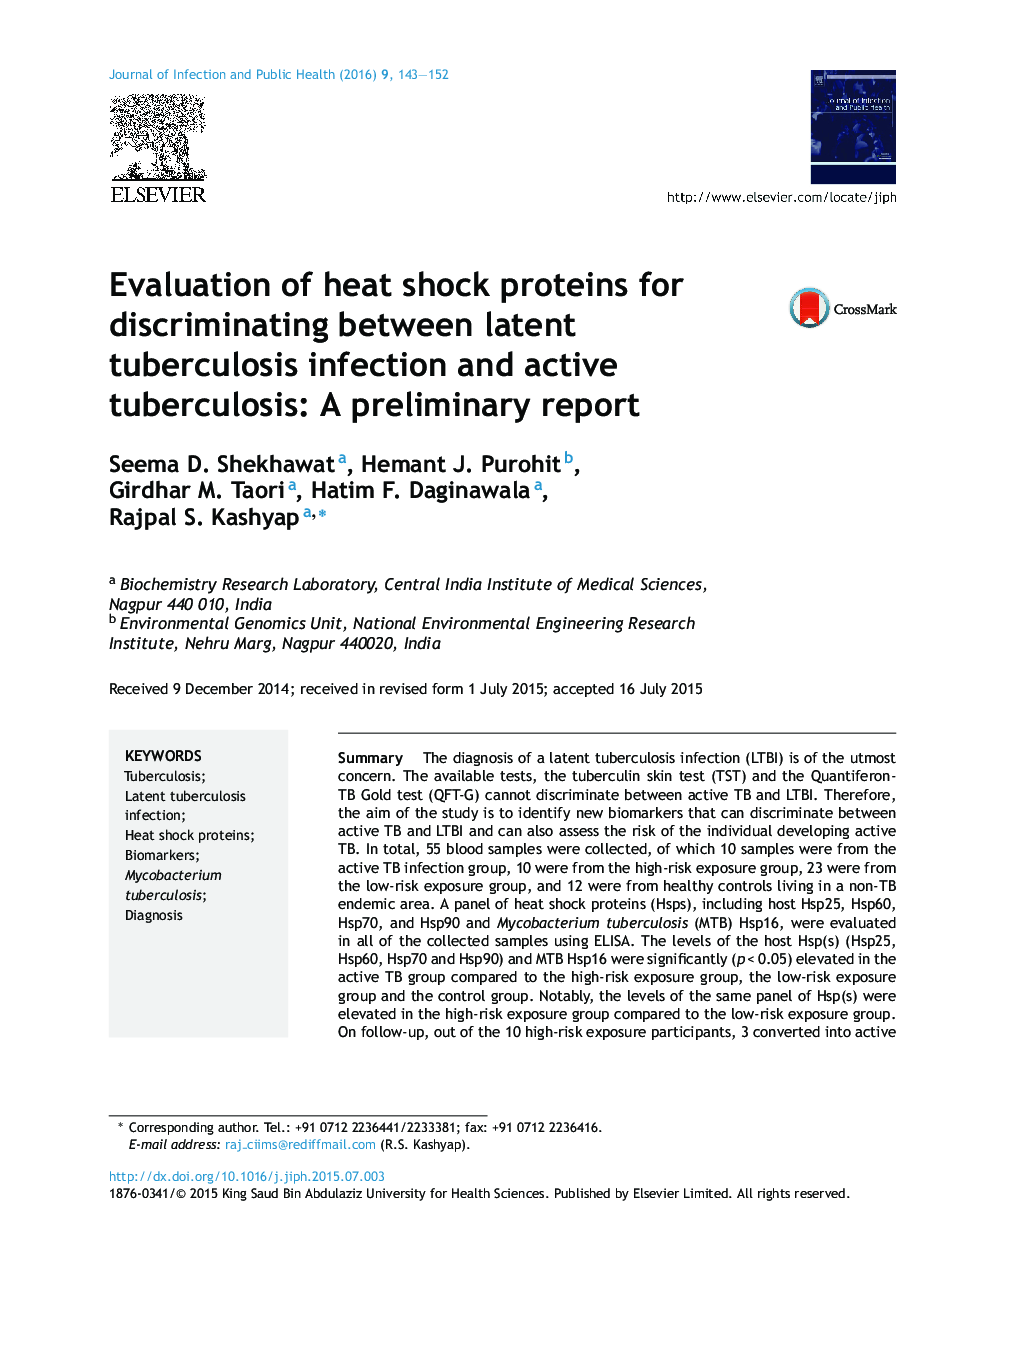 بررسی پروتئین شوک حرارتی برای تبعیض بین عفونت سل و بیماری سل فعال: یک گزارش اولیه